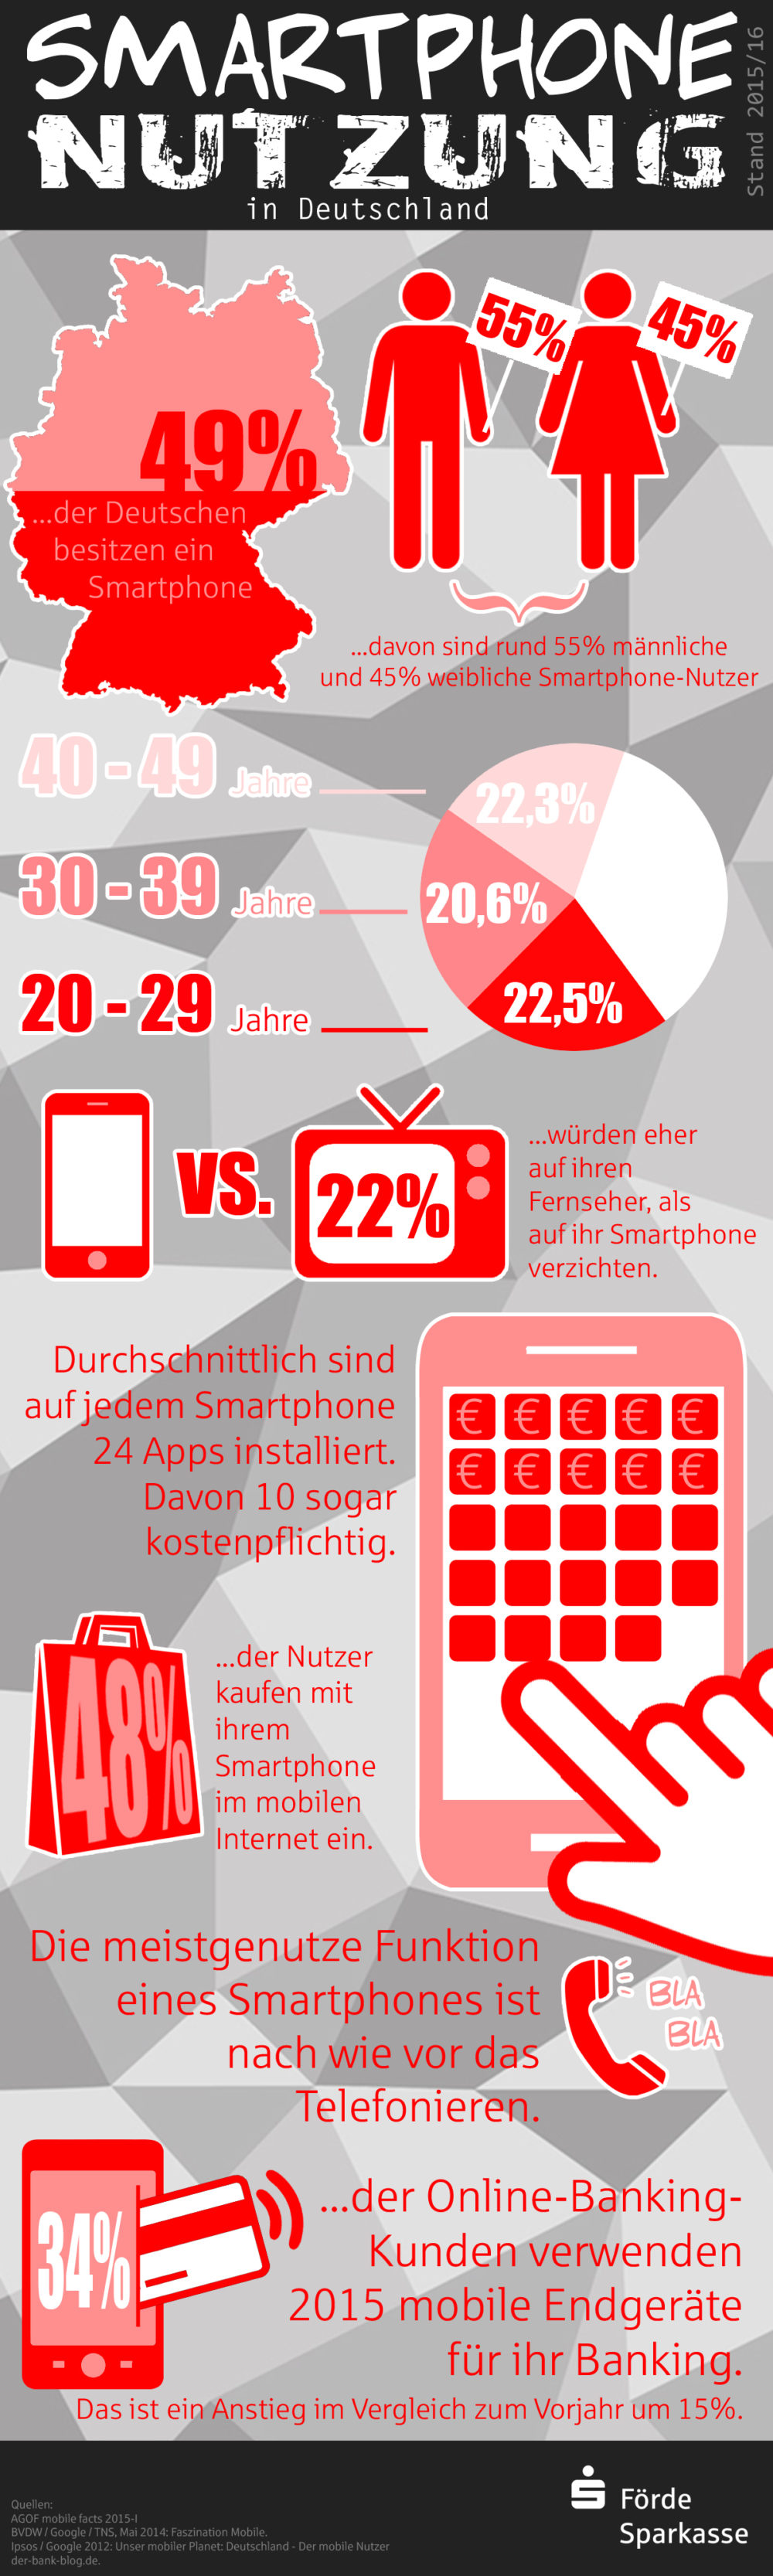 Smartphone Nutzung in Deutschland